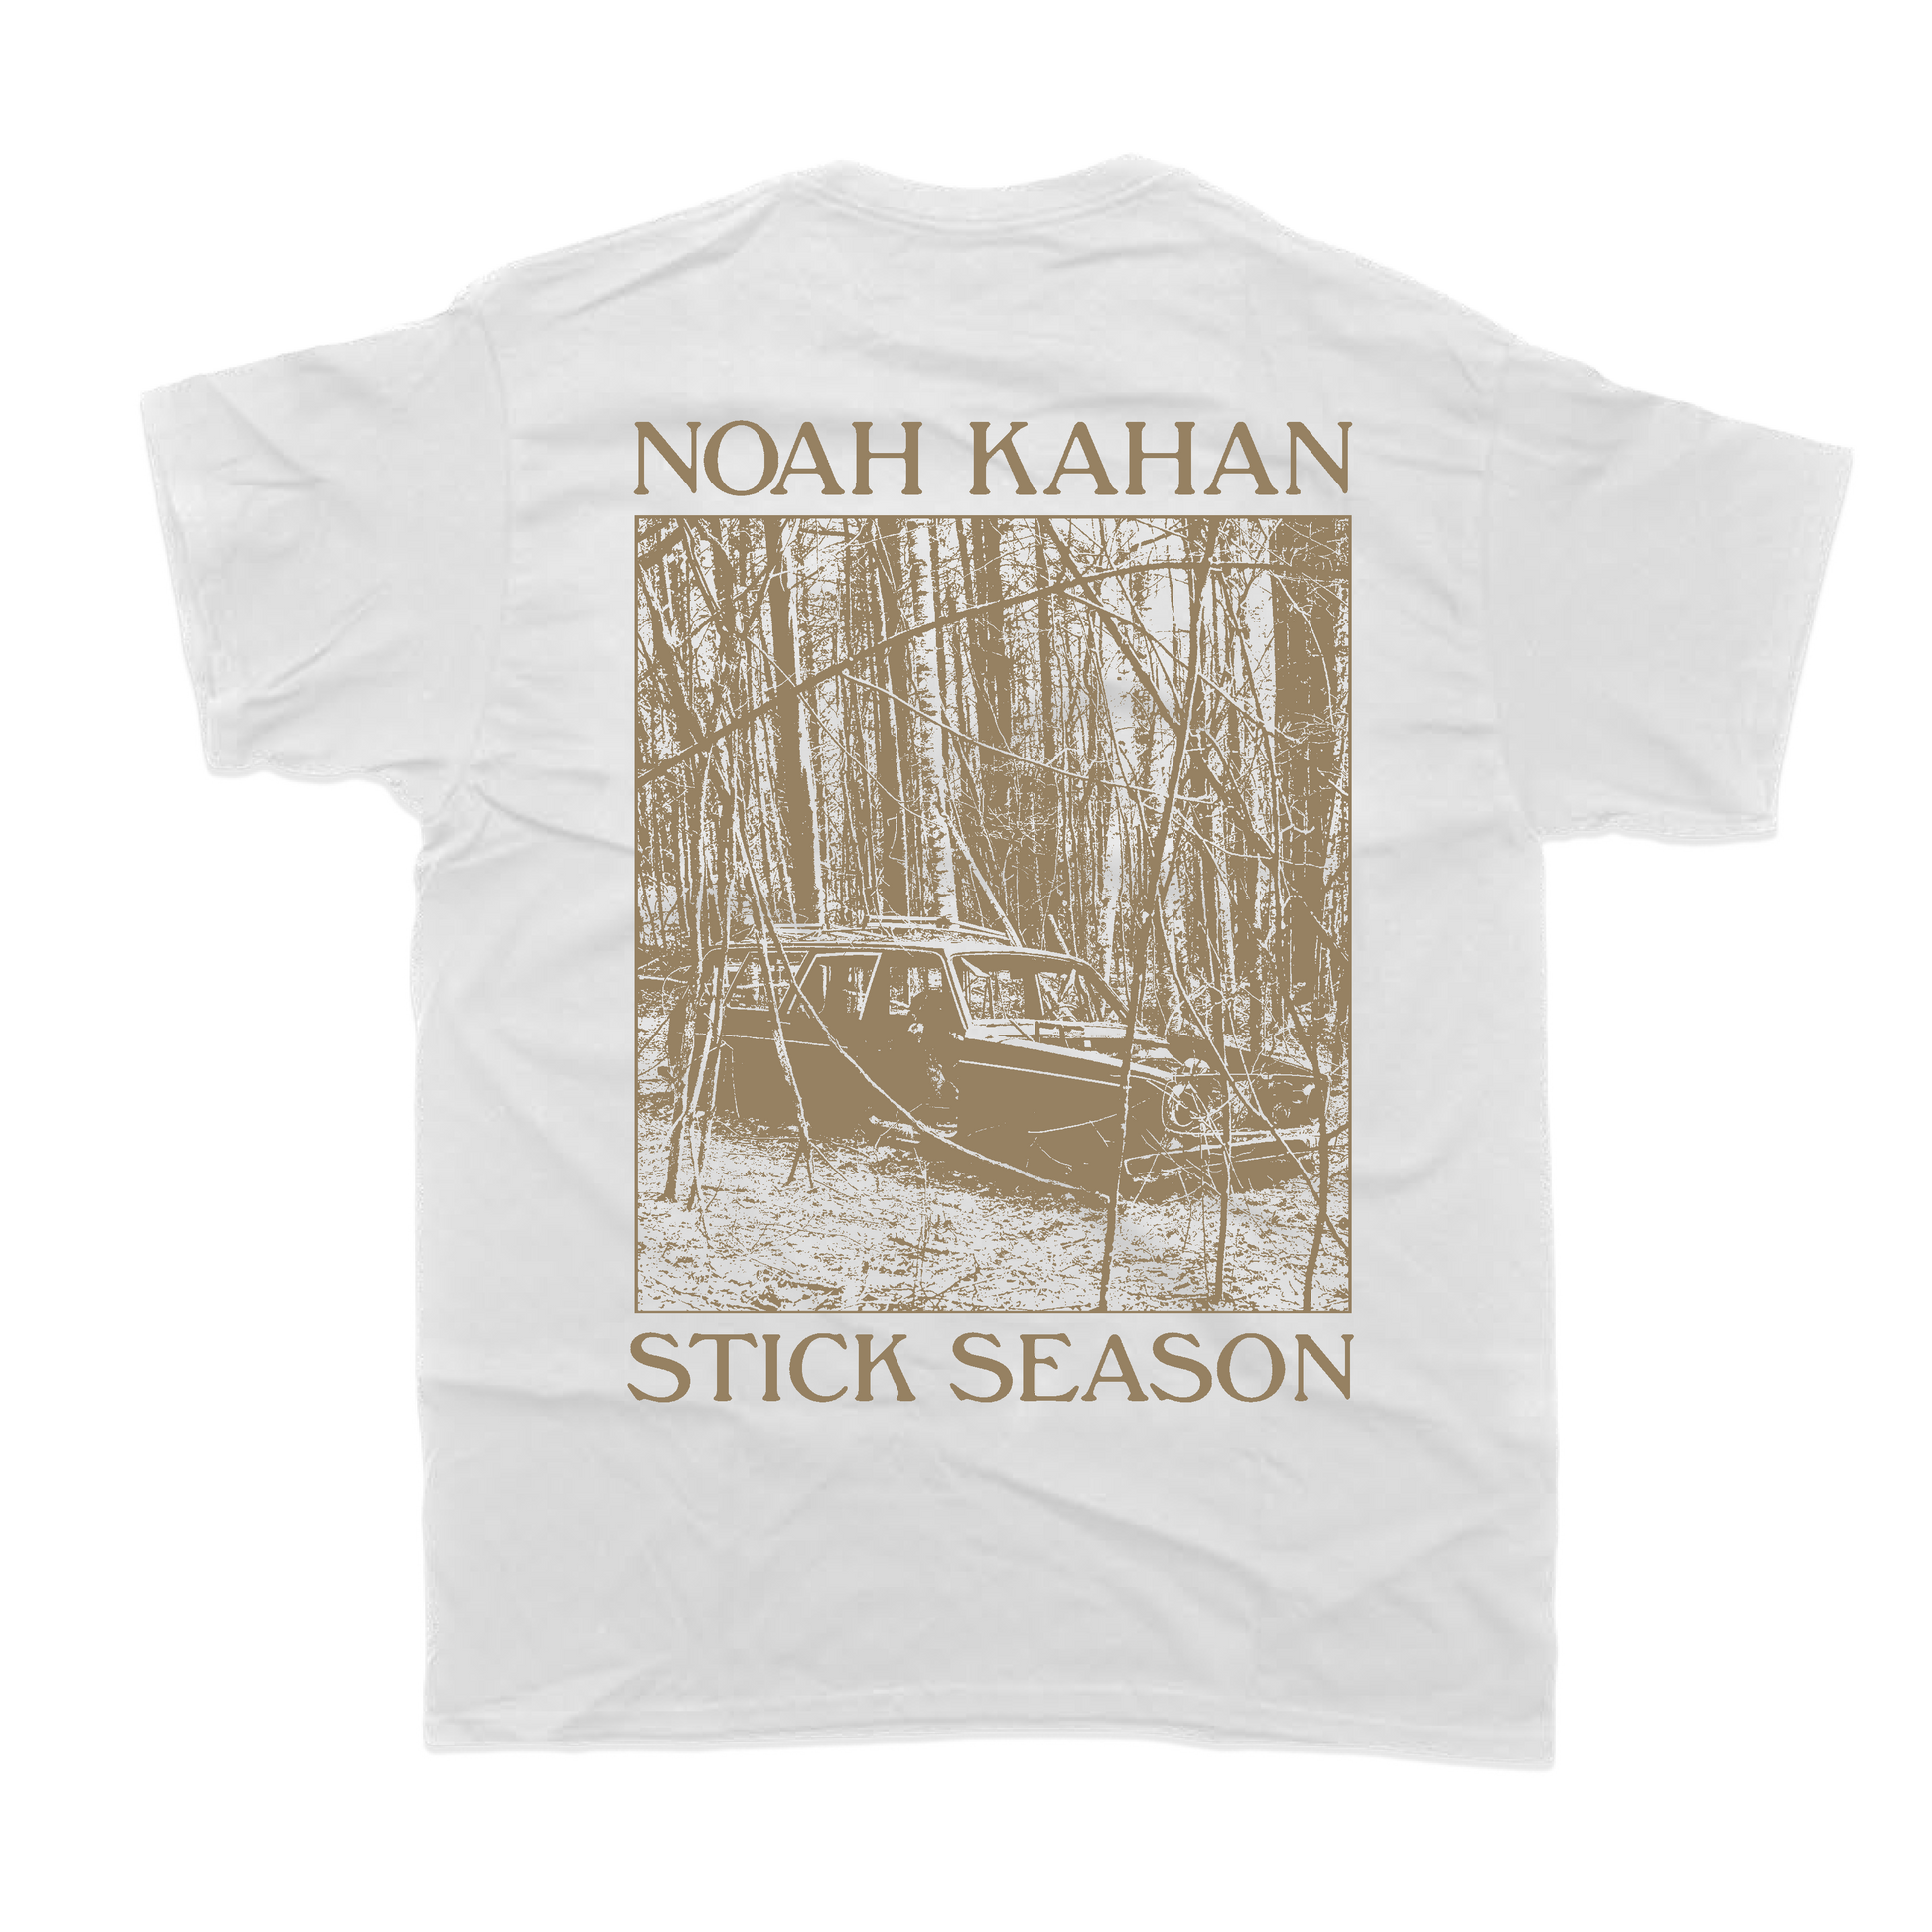 Noah Kahan Stick Season white comfort colors tee